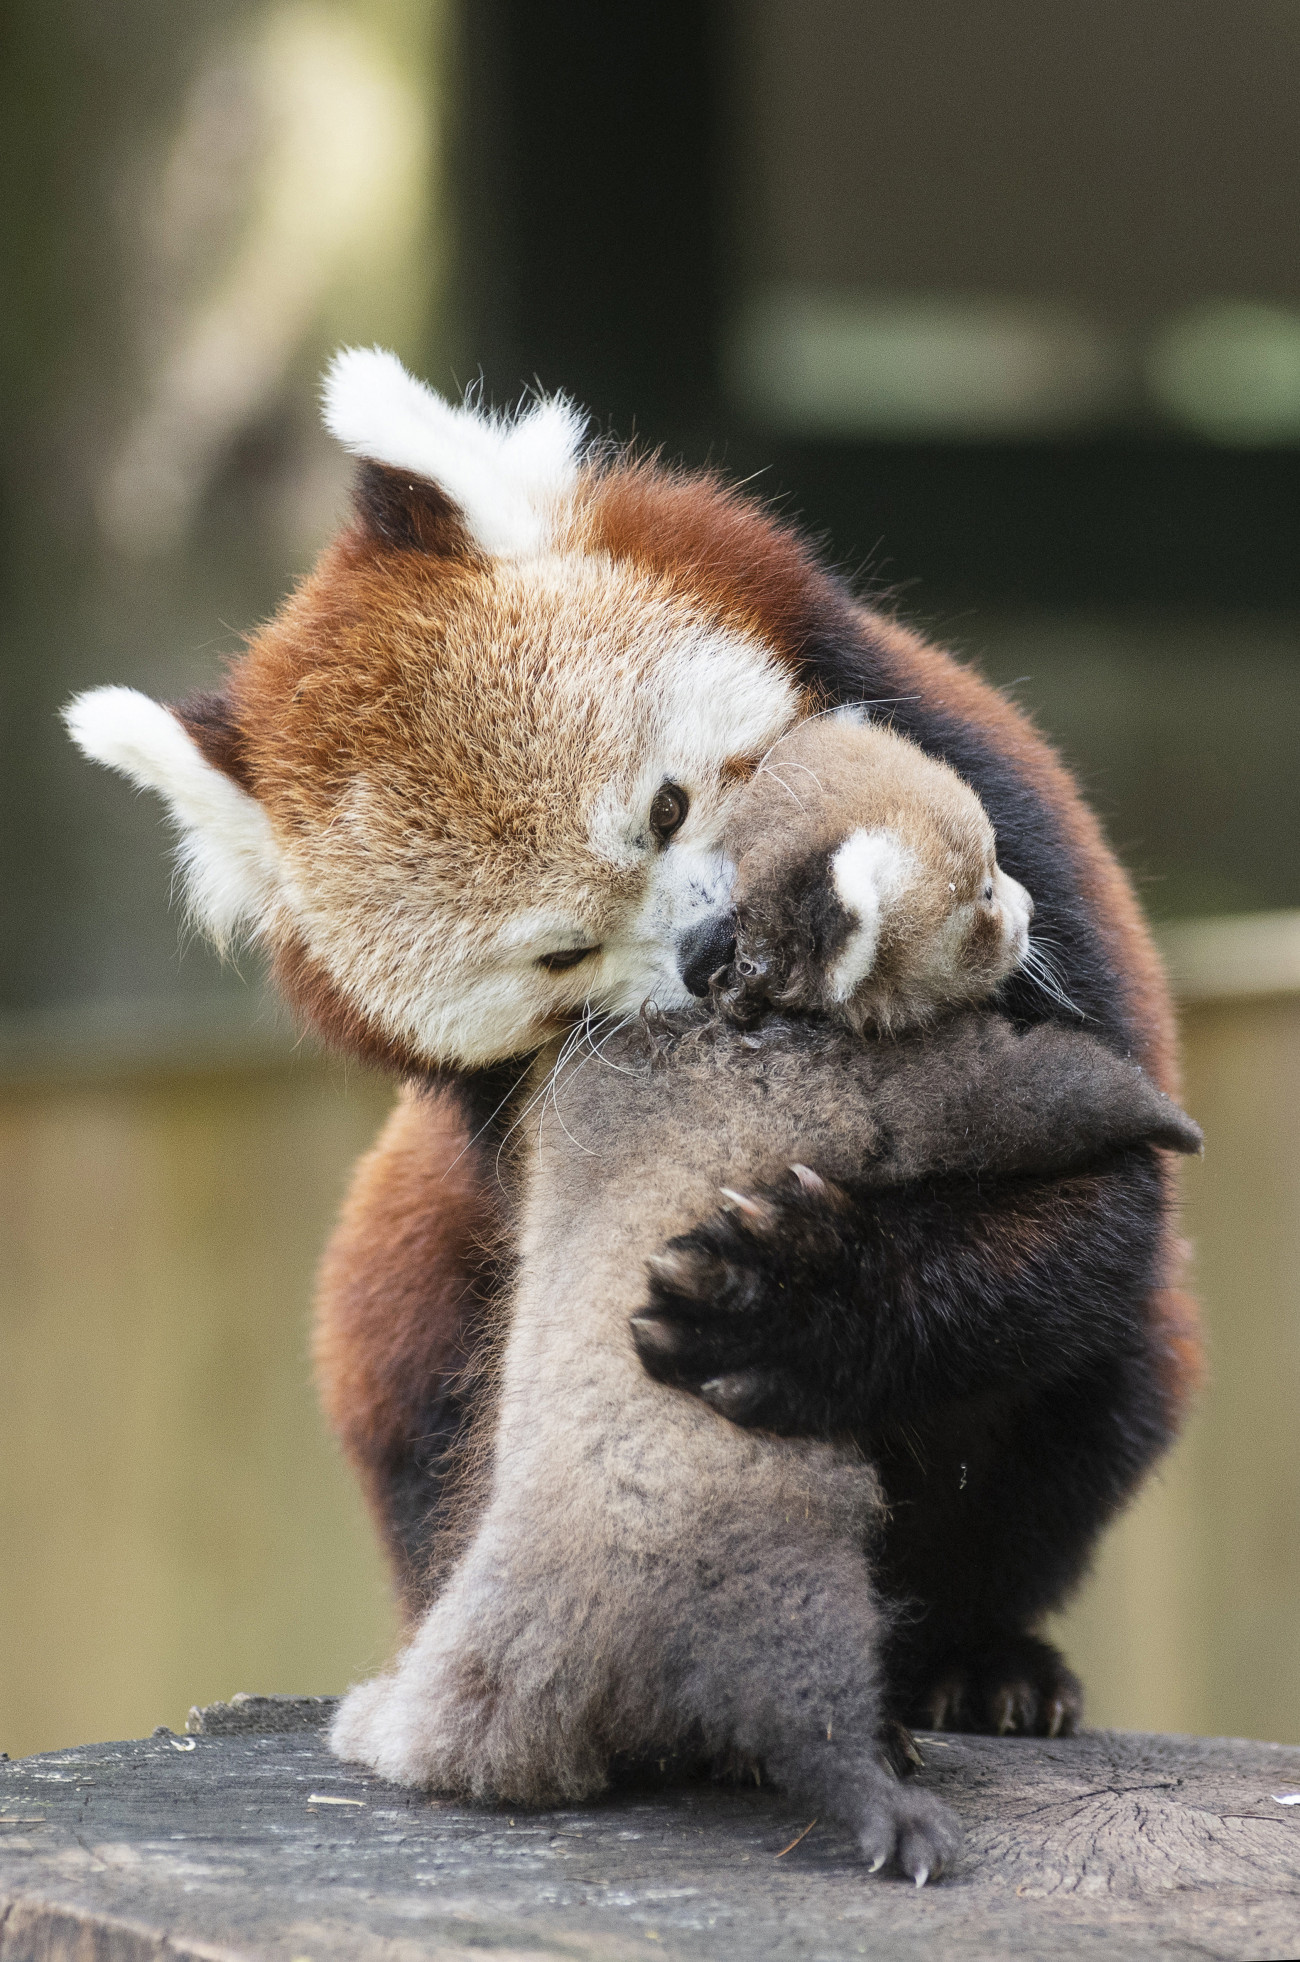 Nyíregyháza, 2019. augusztus 2.
Hathetes vörös macskamedvekölyök, más néven kis panda (Ailurus fulgens) anyjával a Nyíregyházi Állatparkban 2019. augusztus 2-án. A kis pandaikreket a látogatók két hét múlva láthatják. A Himalája mérsékelt övi erdőiben, Bhután, Kína, India, Laosz, Mianmar és Nepál területén élő faj mindenütt védelmet élvez, a Természetvédelmi Világszövetség a súlyosan veszélyeztetett kategóriába sorolta.
MTI/Balázs Attila